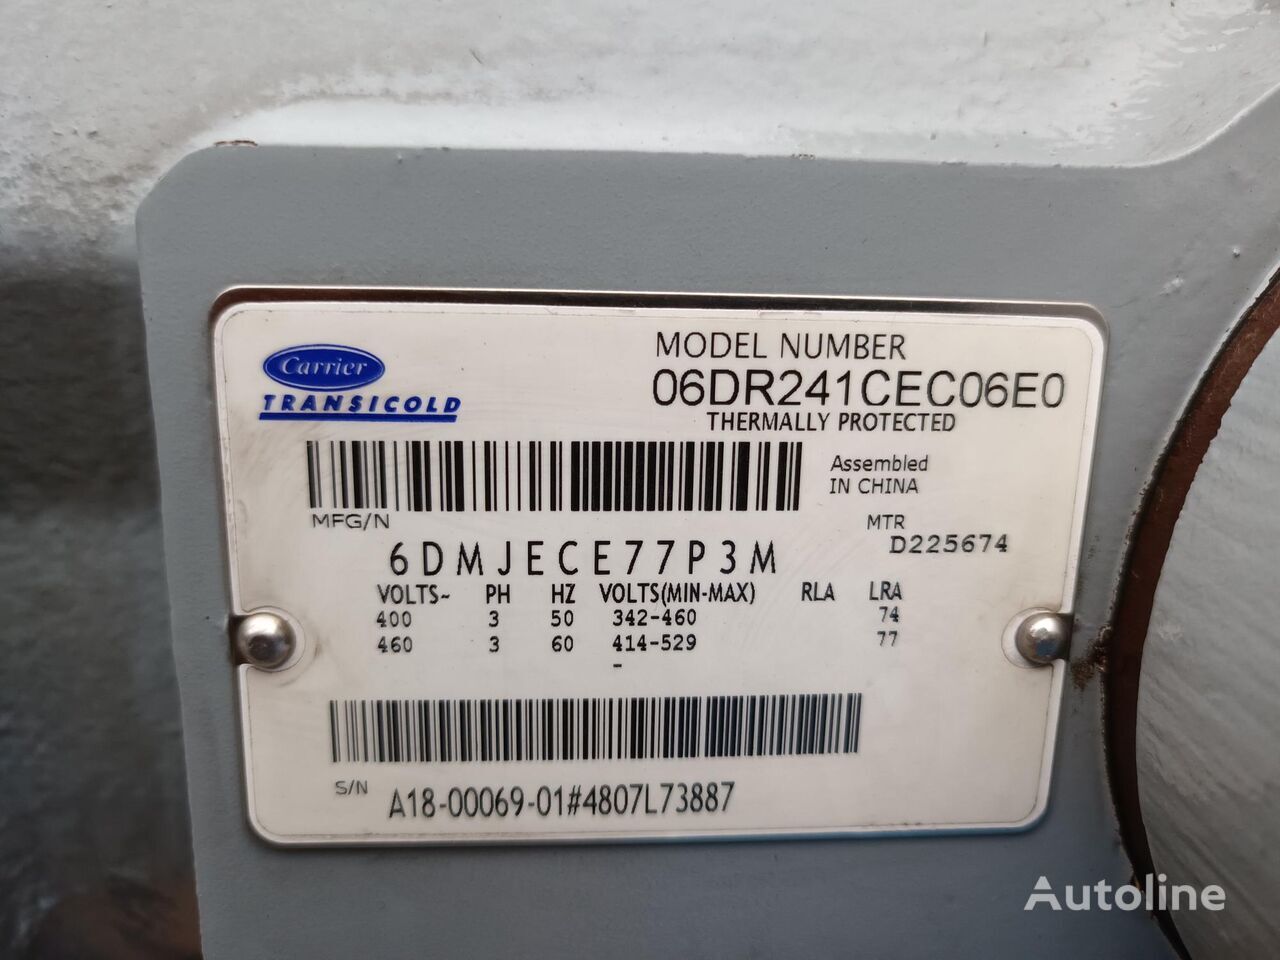 Kompressor, Druckluftanlage für LKW SUPRA 850 MT MULTITEMPERATURA (18-00069-01): das Bild 3